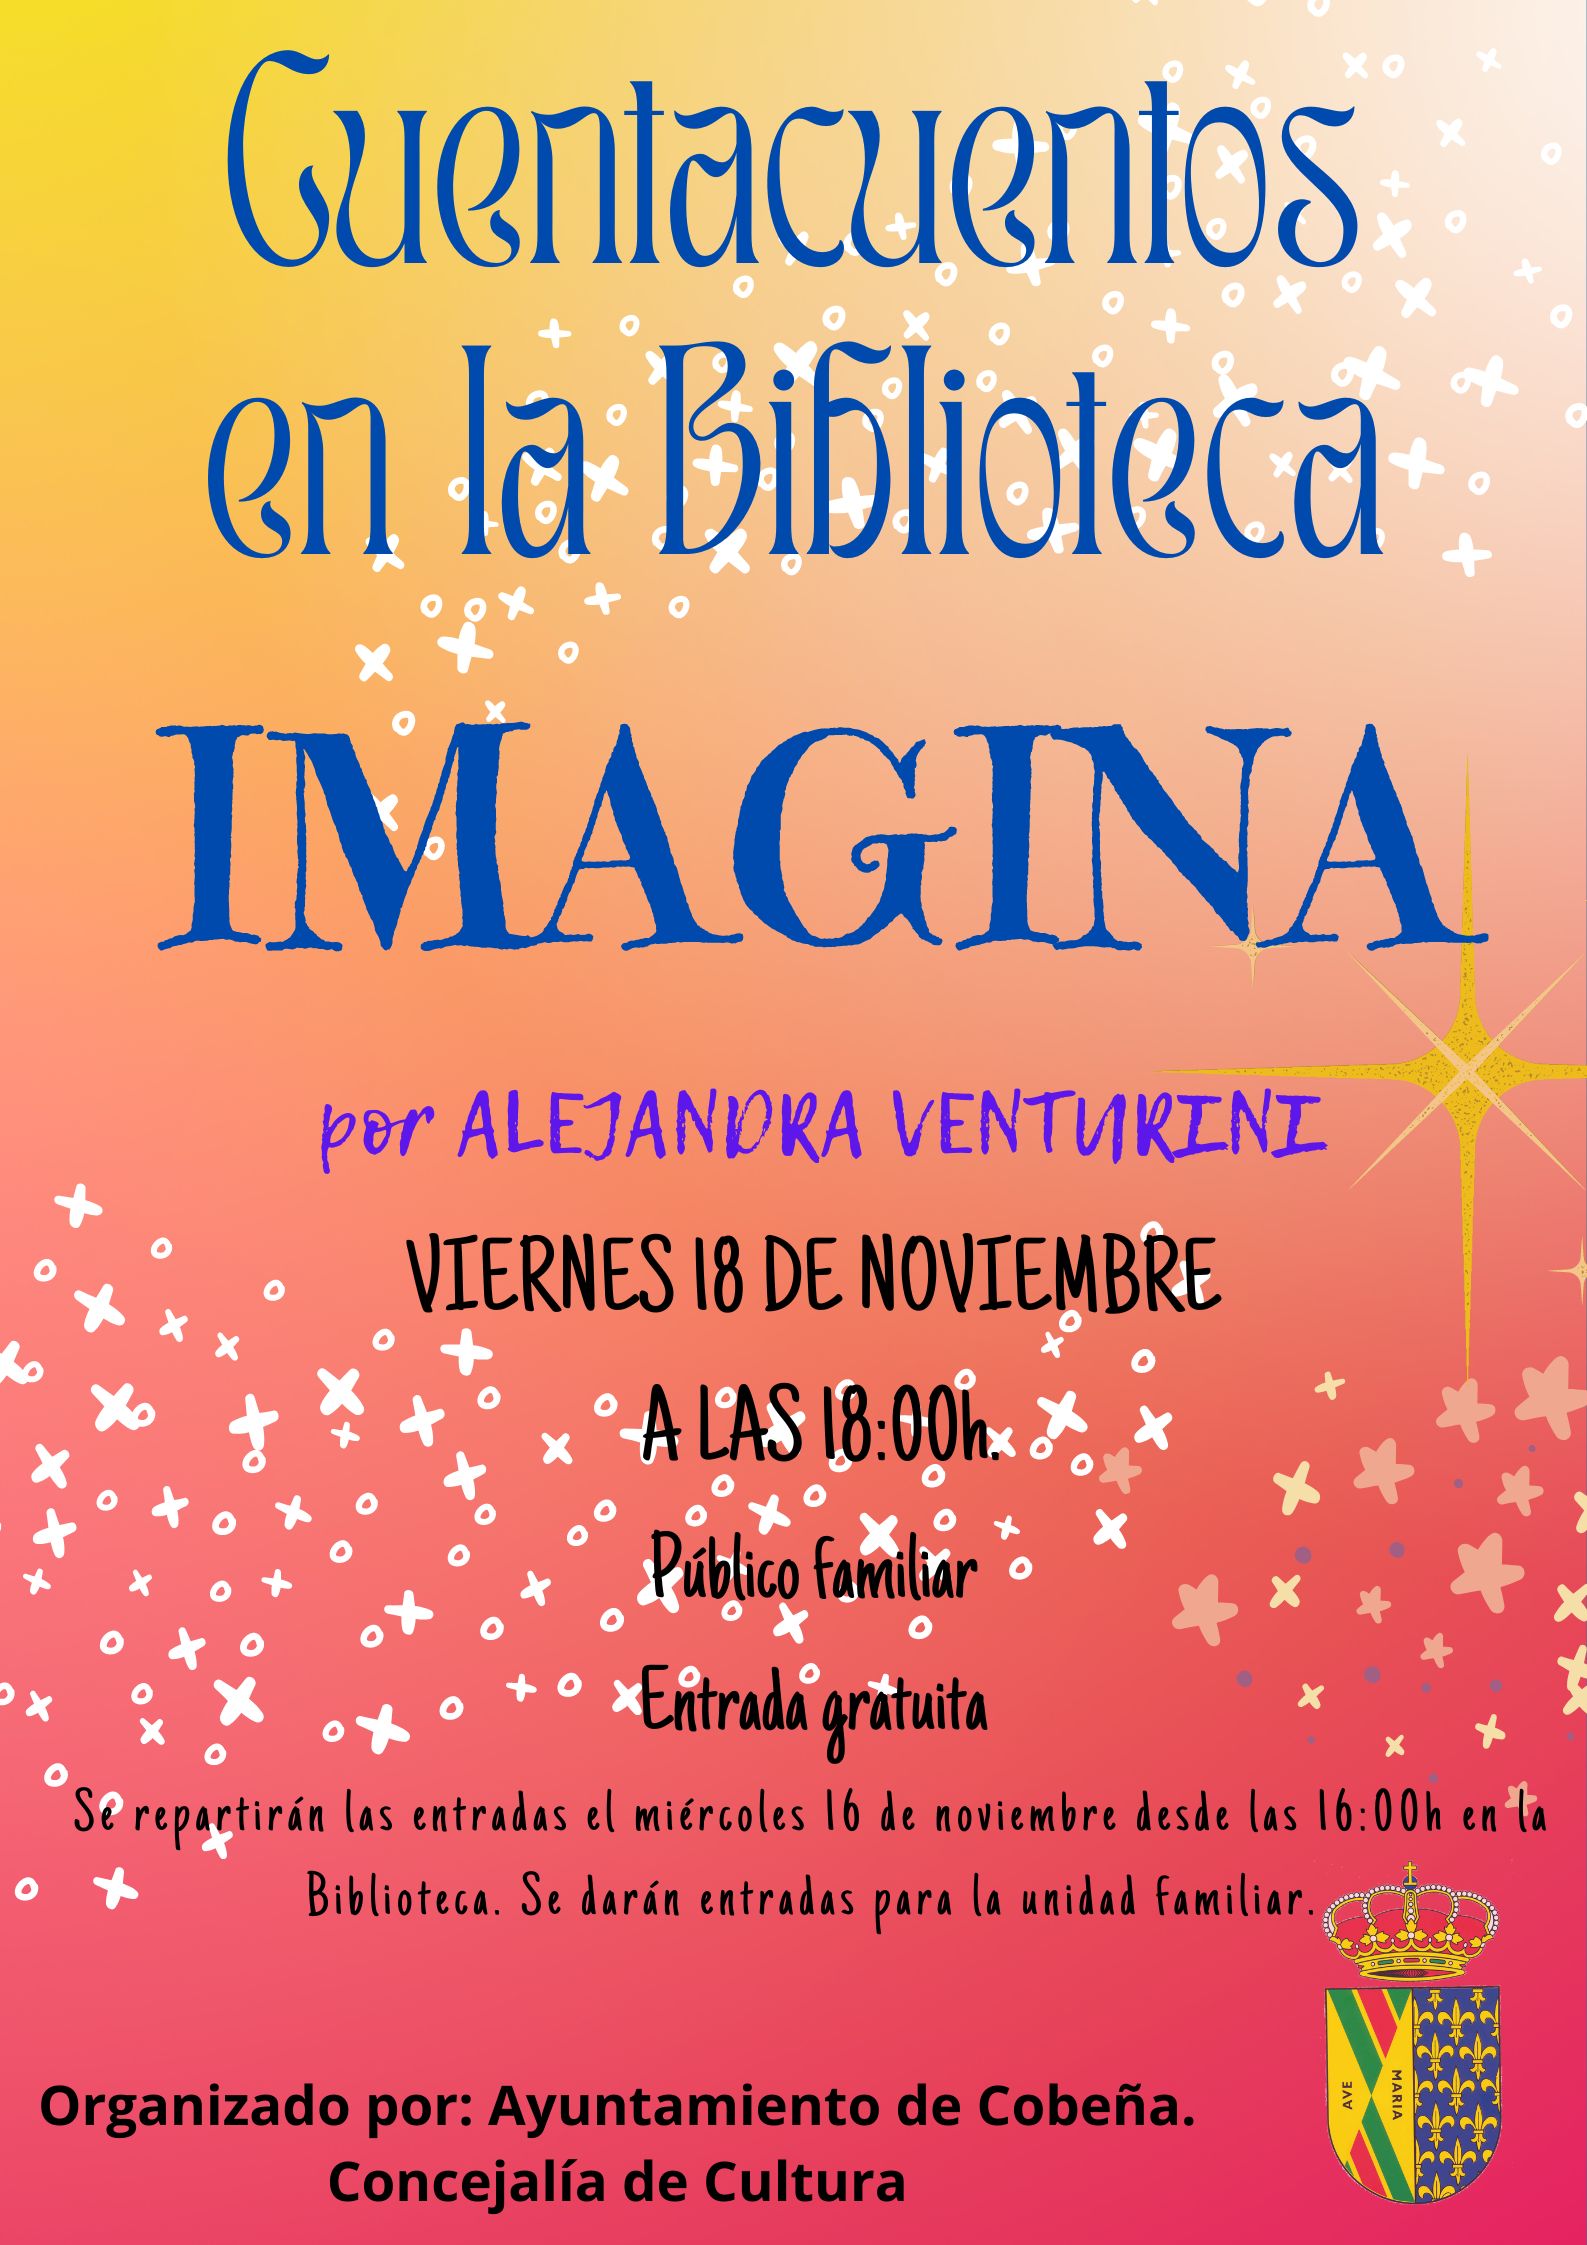 Cuentacuentos en la Biblioteca "Imagina" | Noviembre 2022